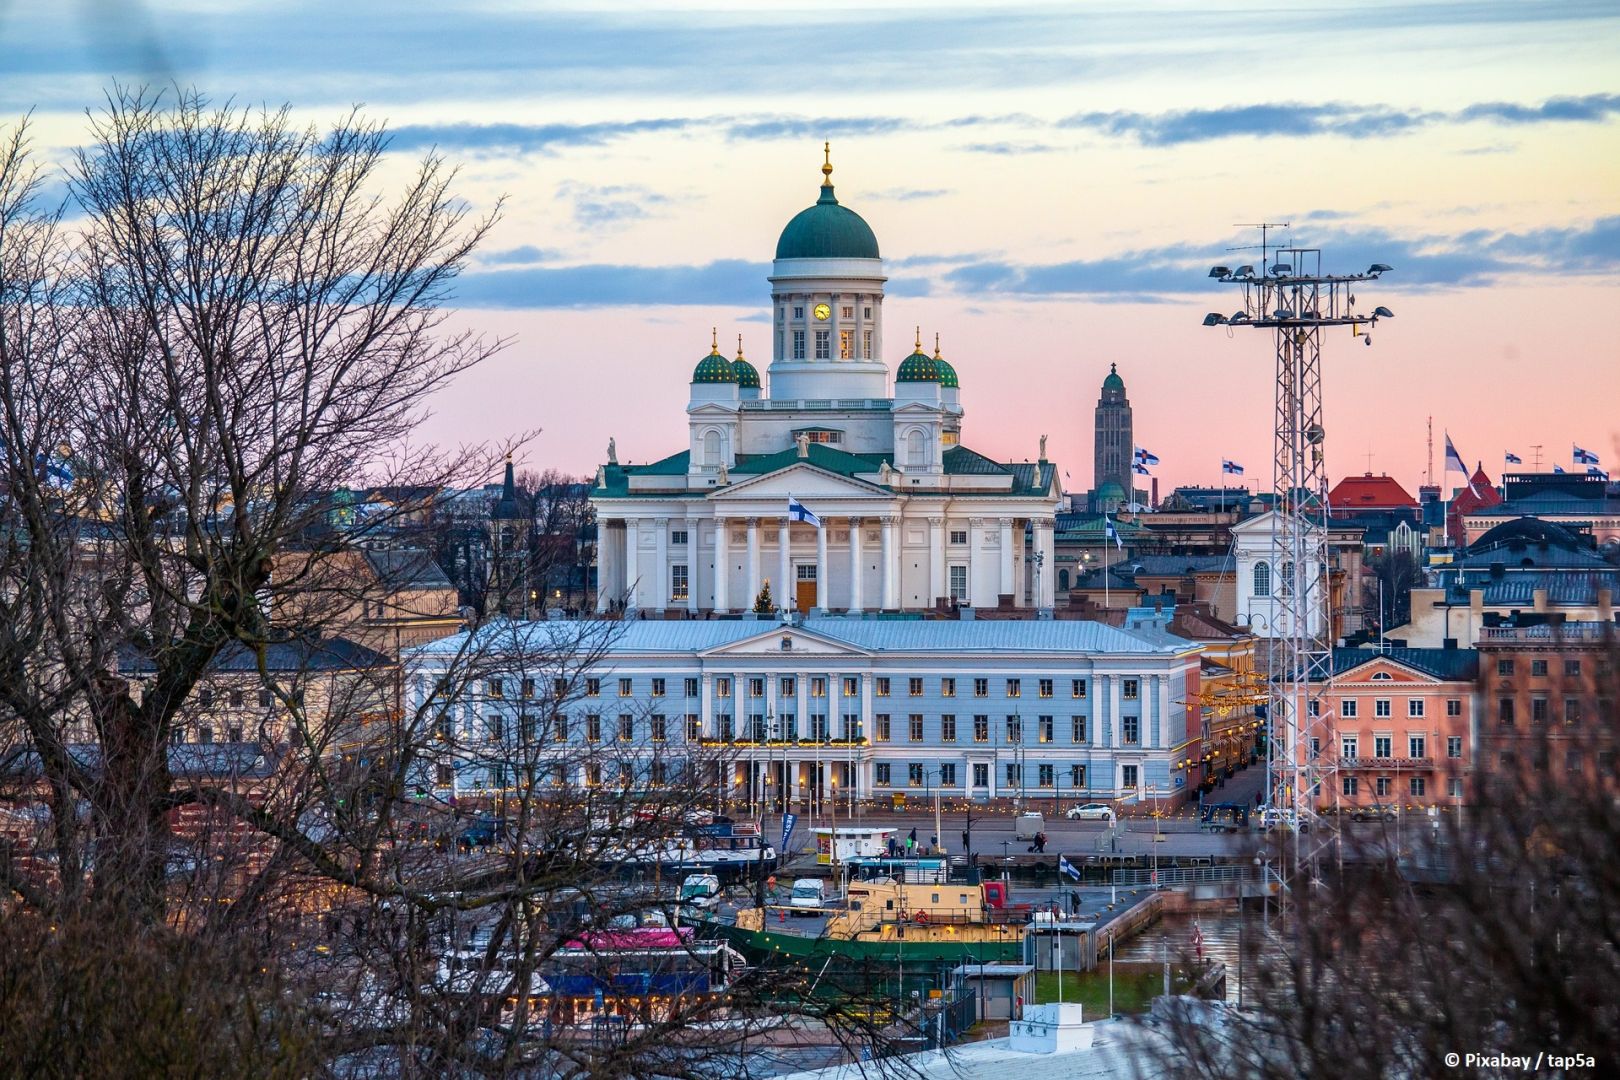 Stubb gewinnt die finnische Präsidentschaftswahl
​